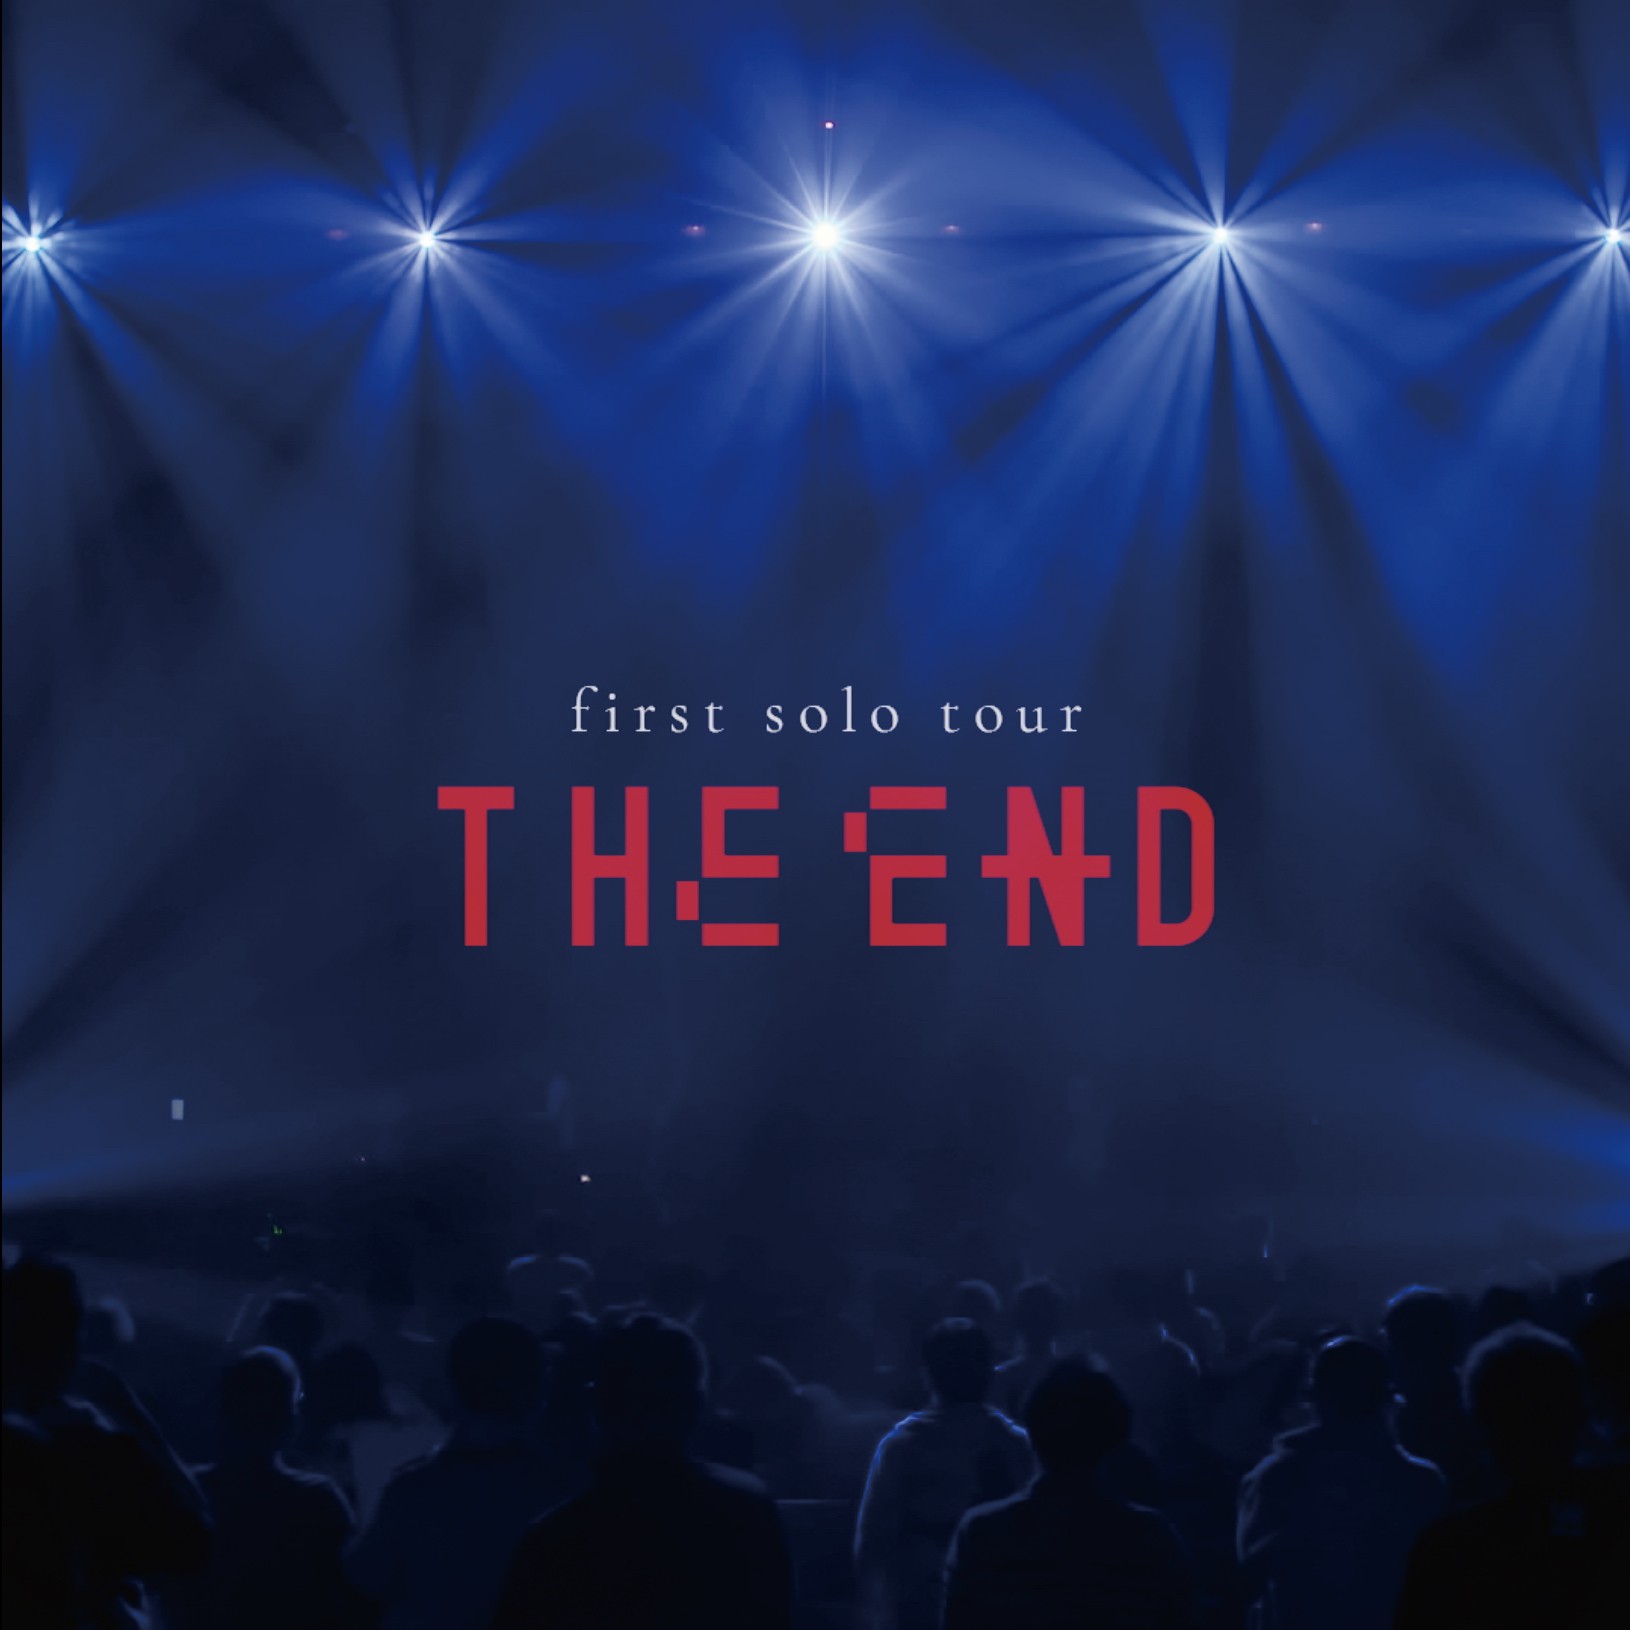 アイナ・ジ・エンド (Aina The End) – 1st solo tour “THE END” [24bit Lossless + MP3 320 / WEB] [2021.11.24]